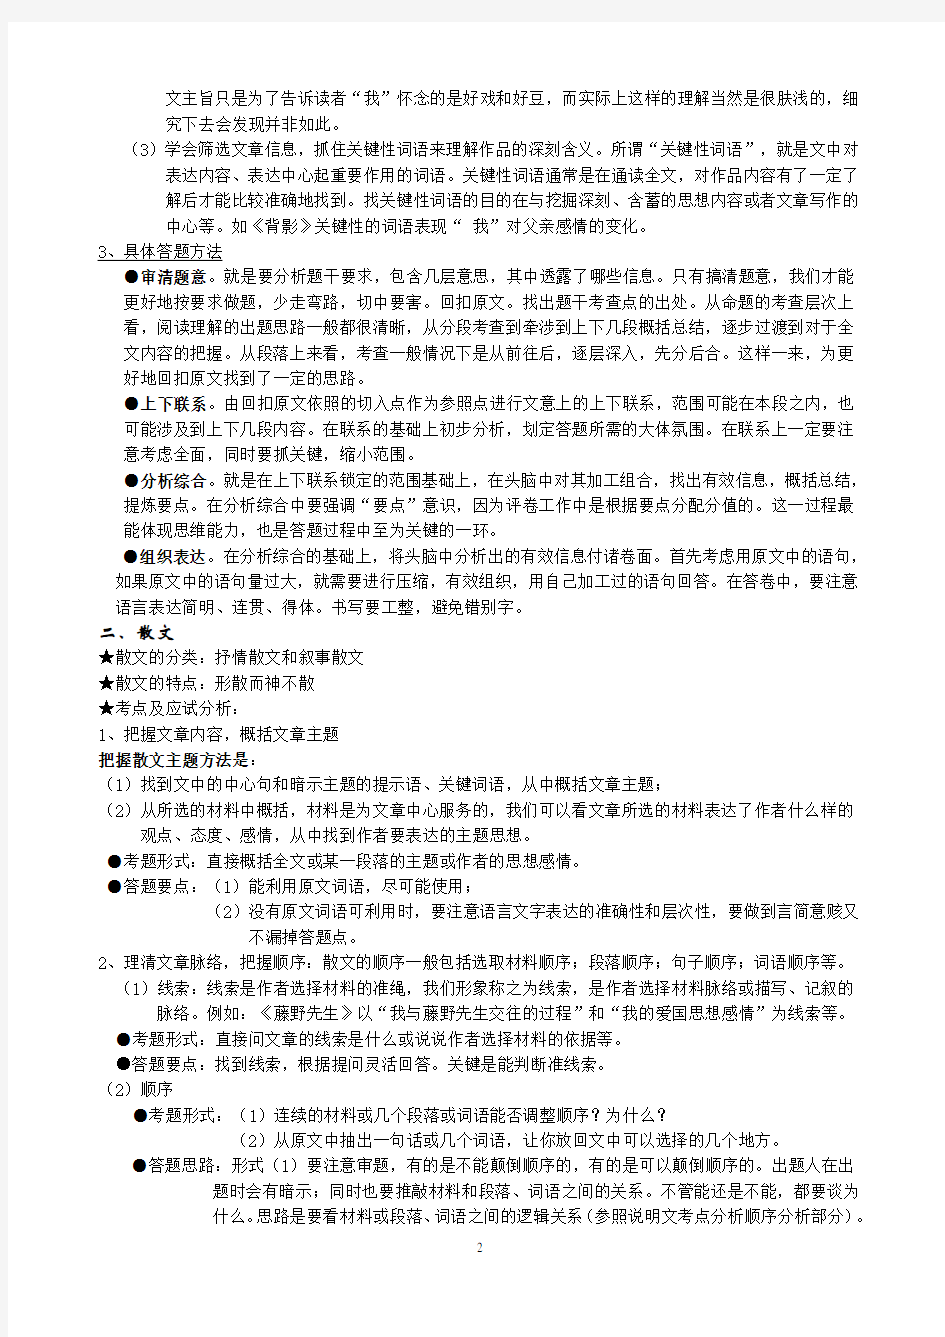 (完整版)初中语文现代文复习资料大全